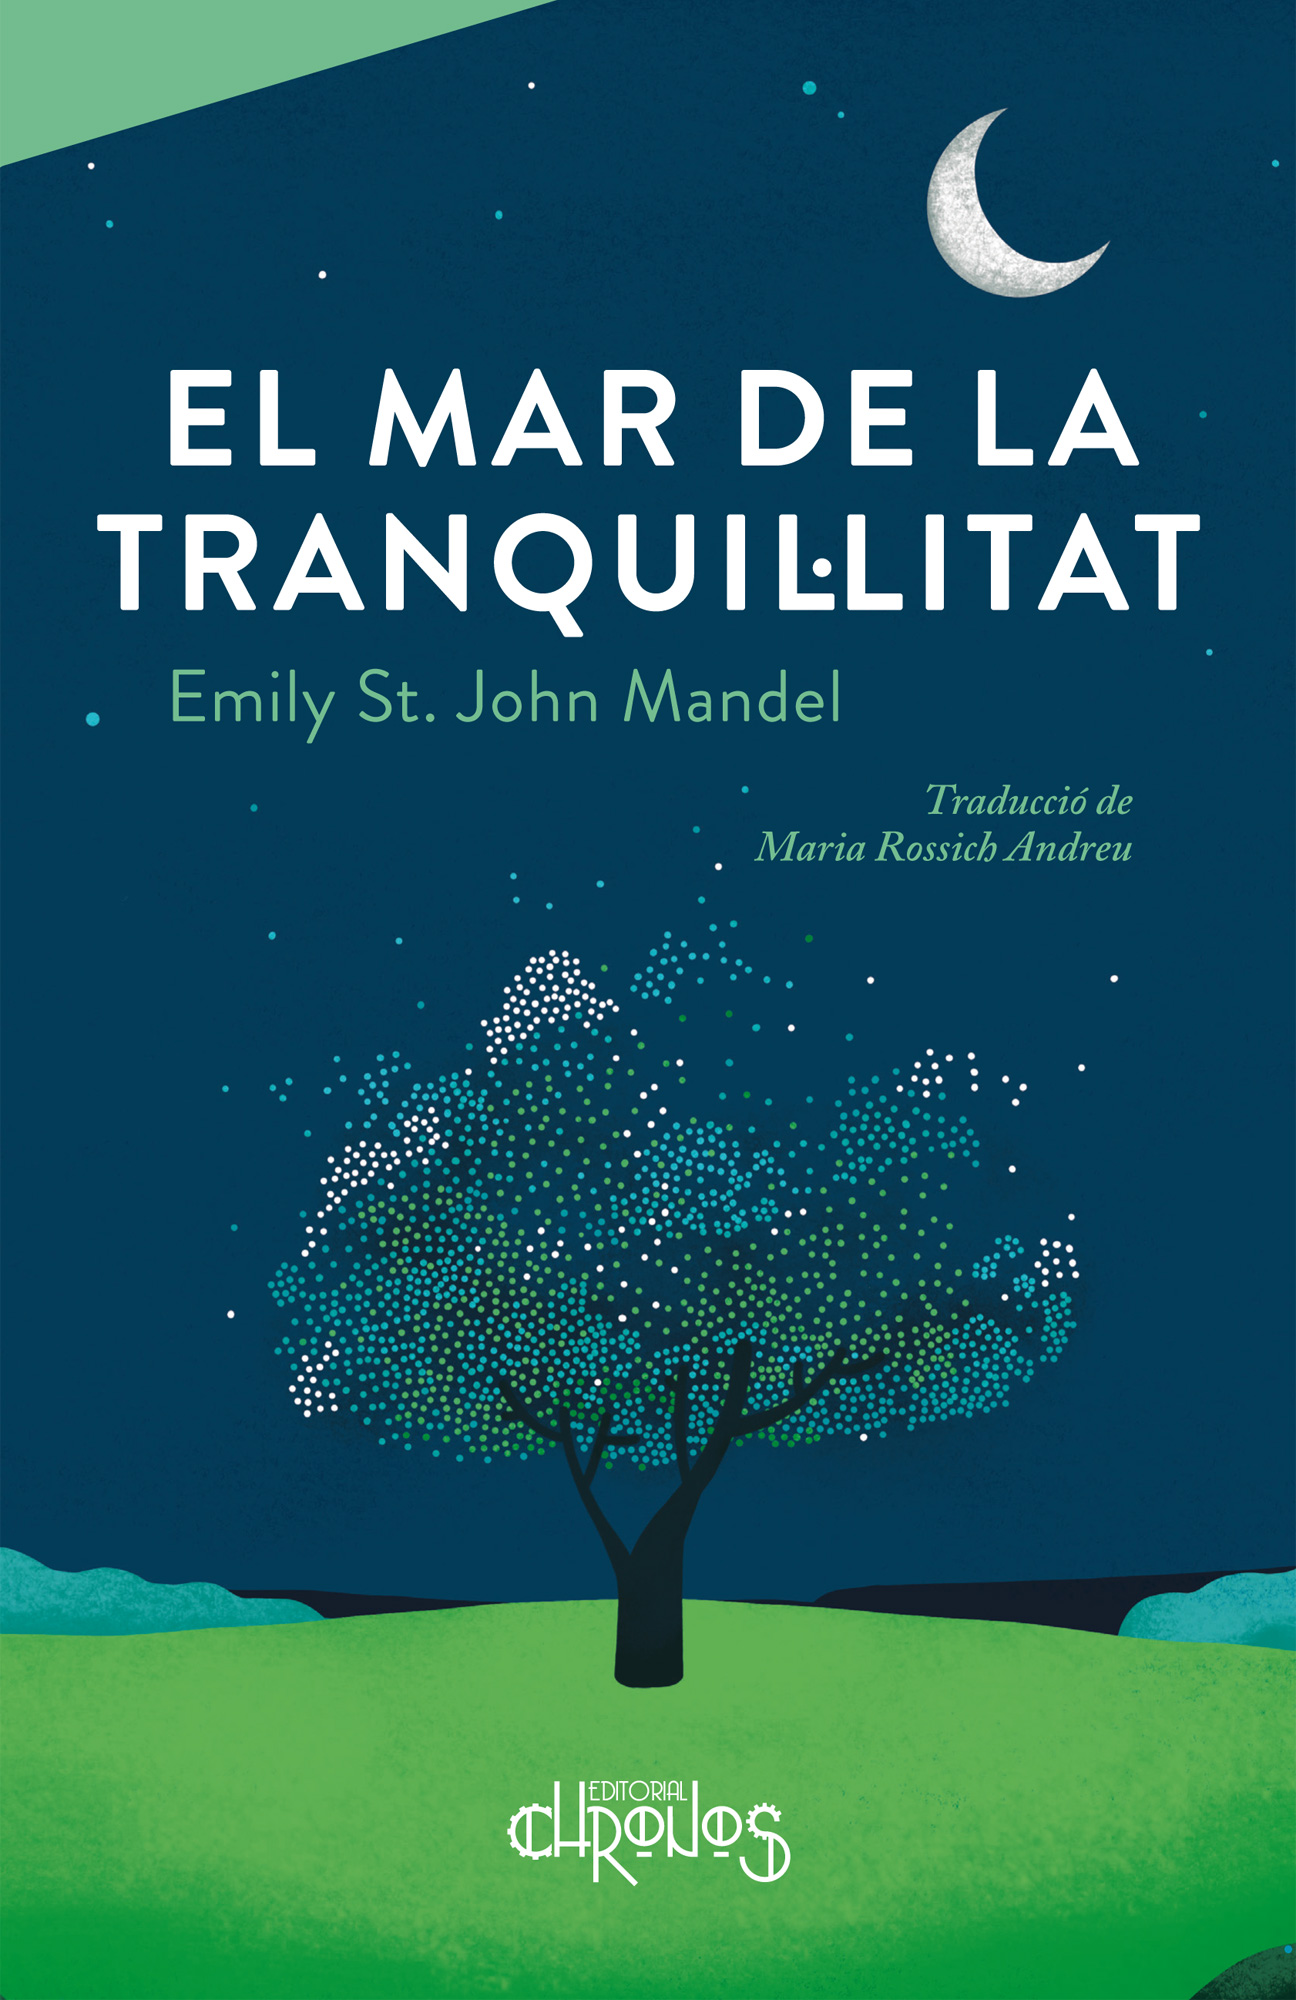 Emily St. John Mandel, Maria Rossich, NataliaZaratiegui: El mar de la tranquil·litat (Català language, Editorial Chronos)